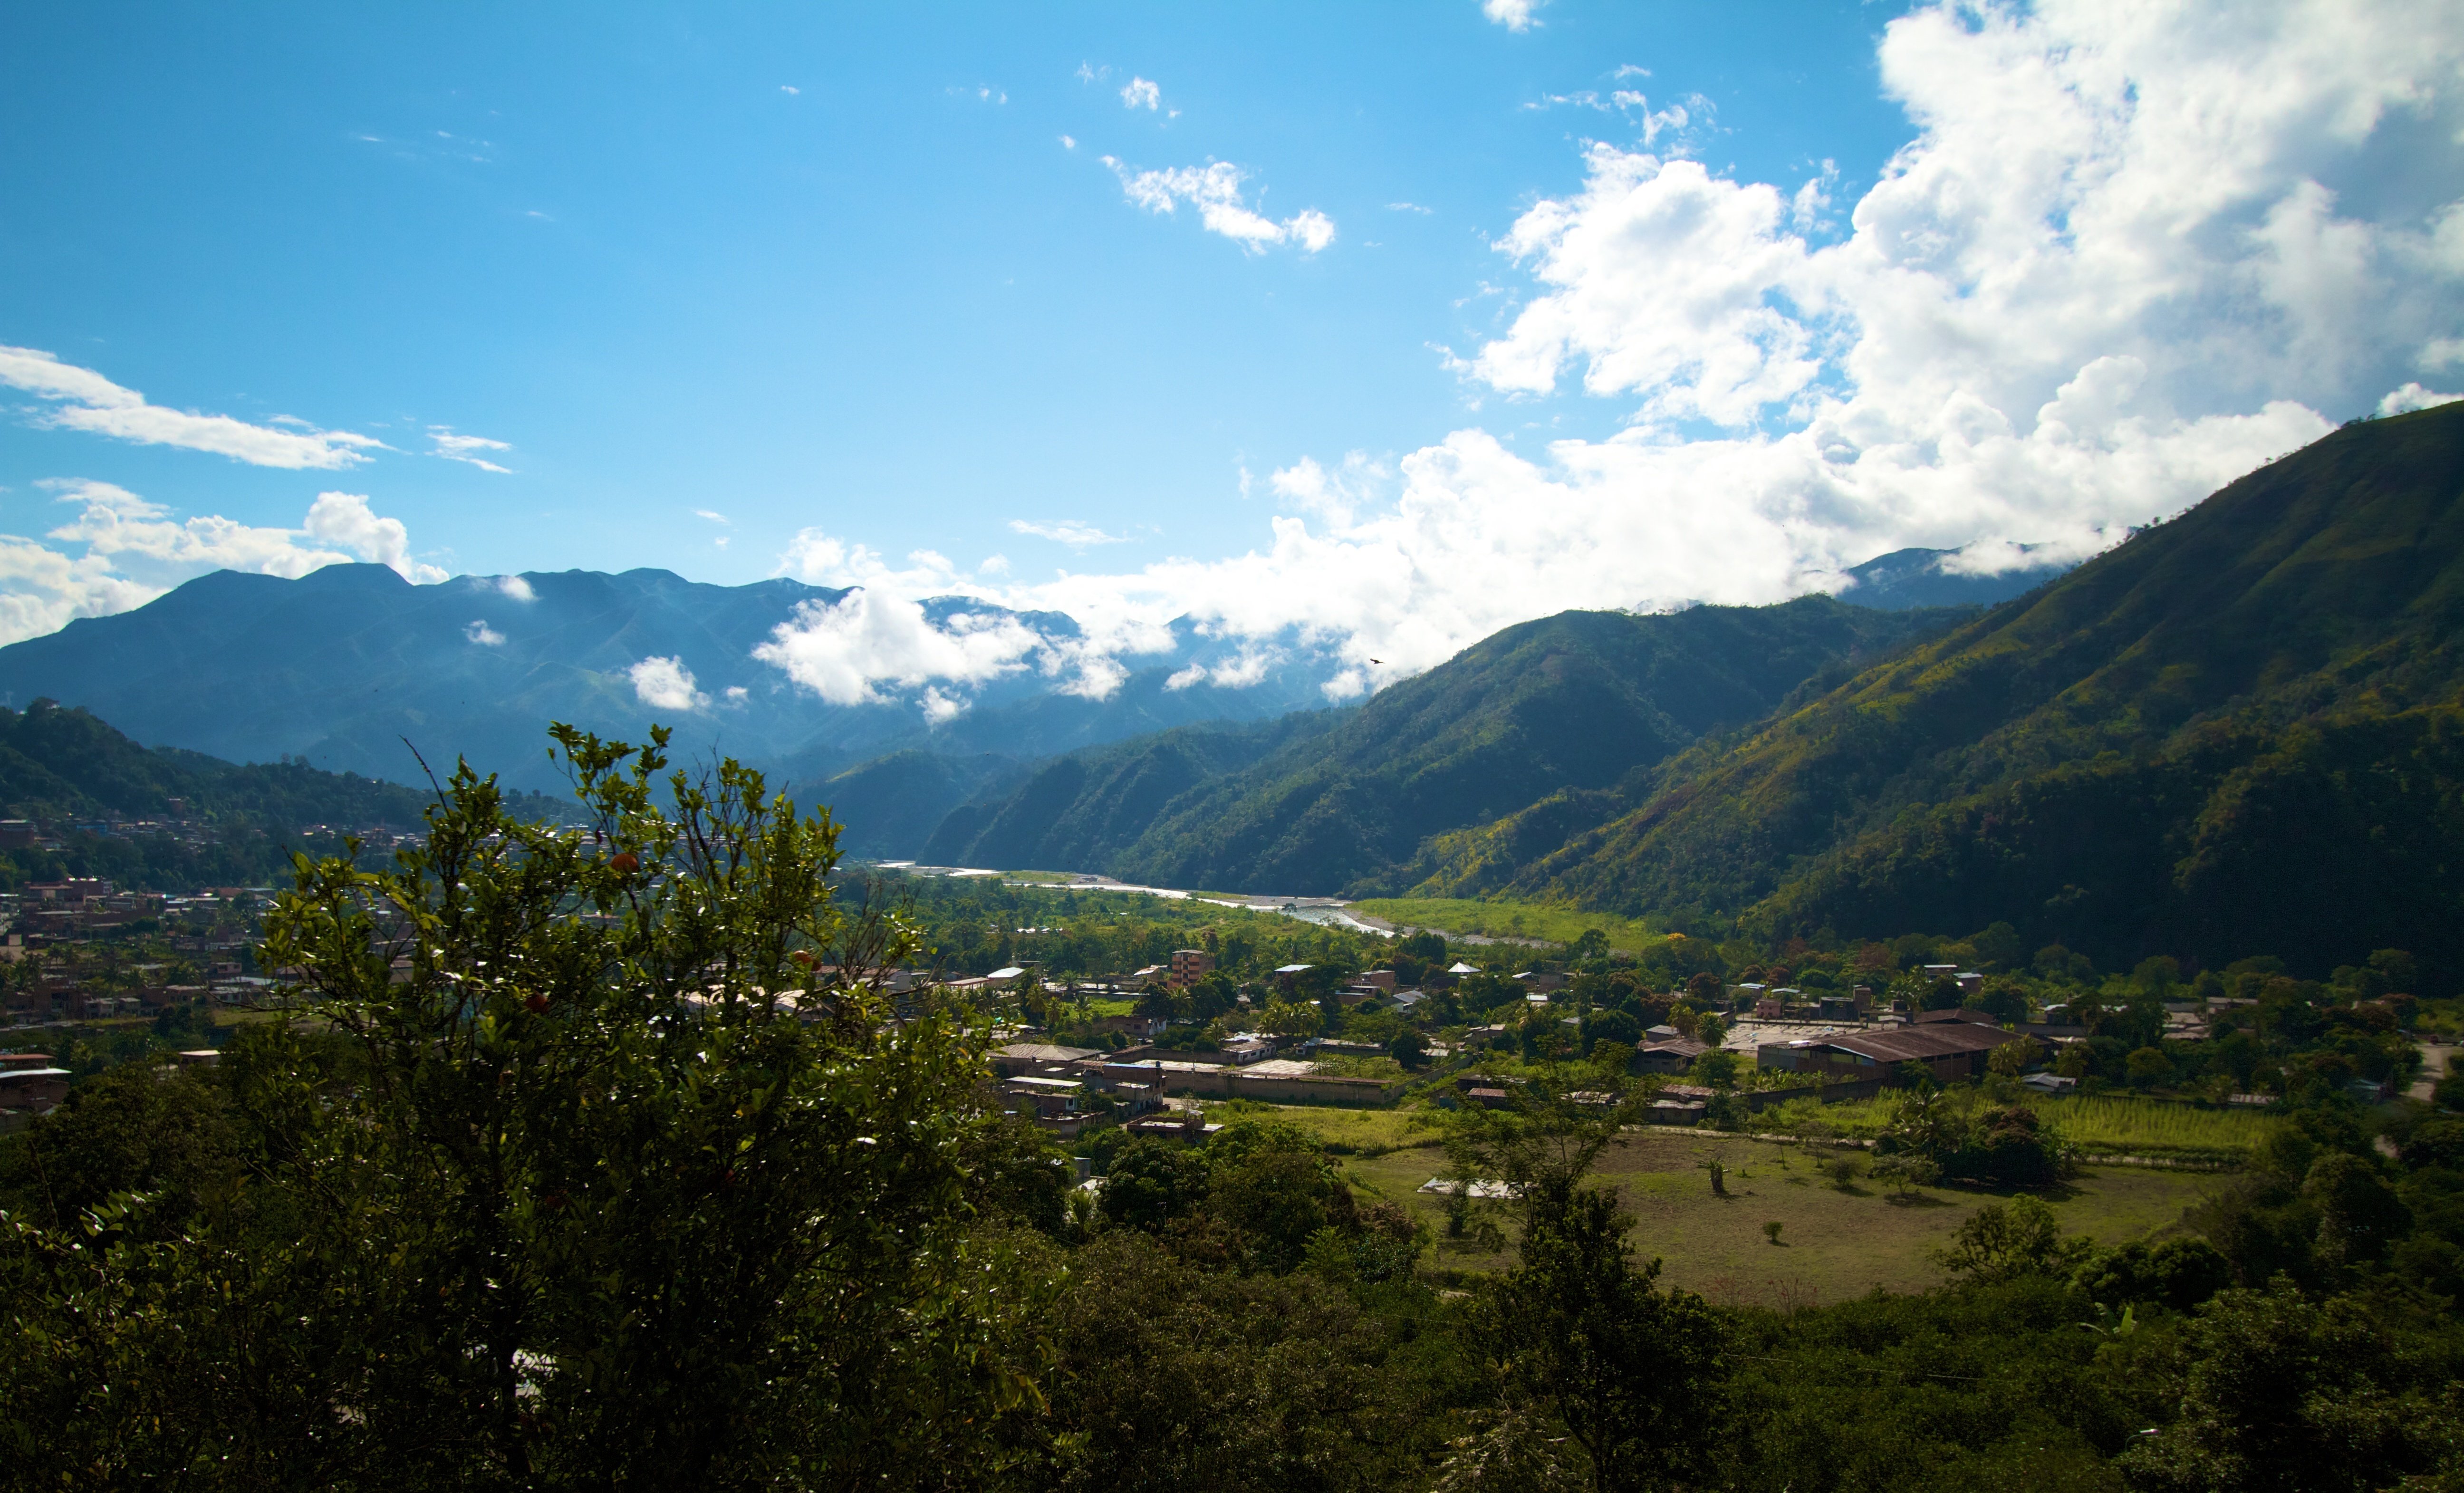 The valley surrounding San Martín de Pangoa